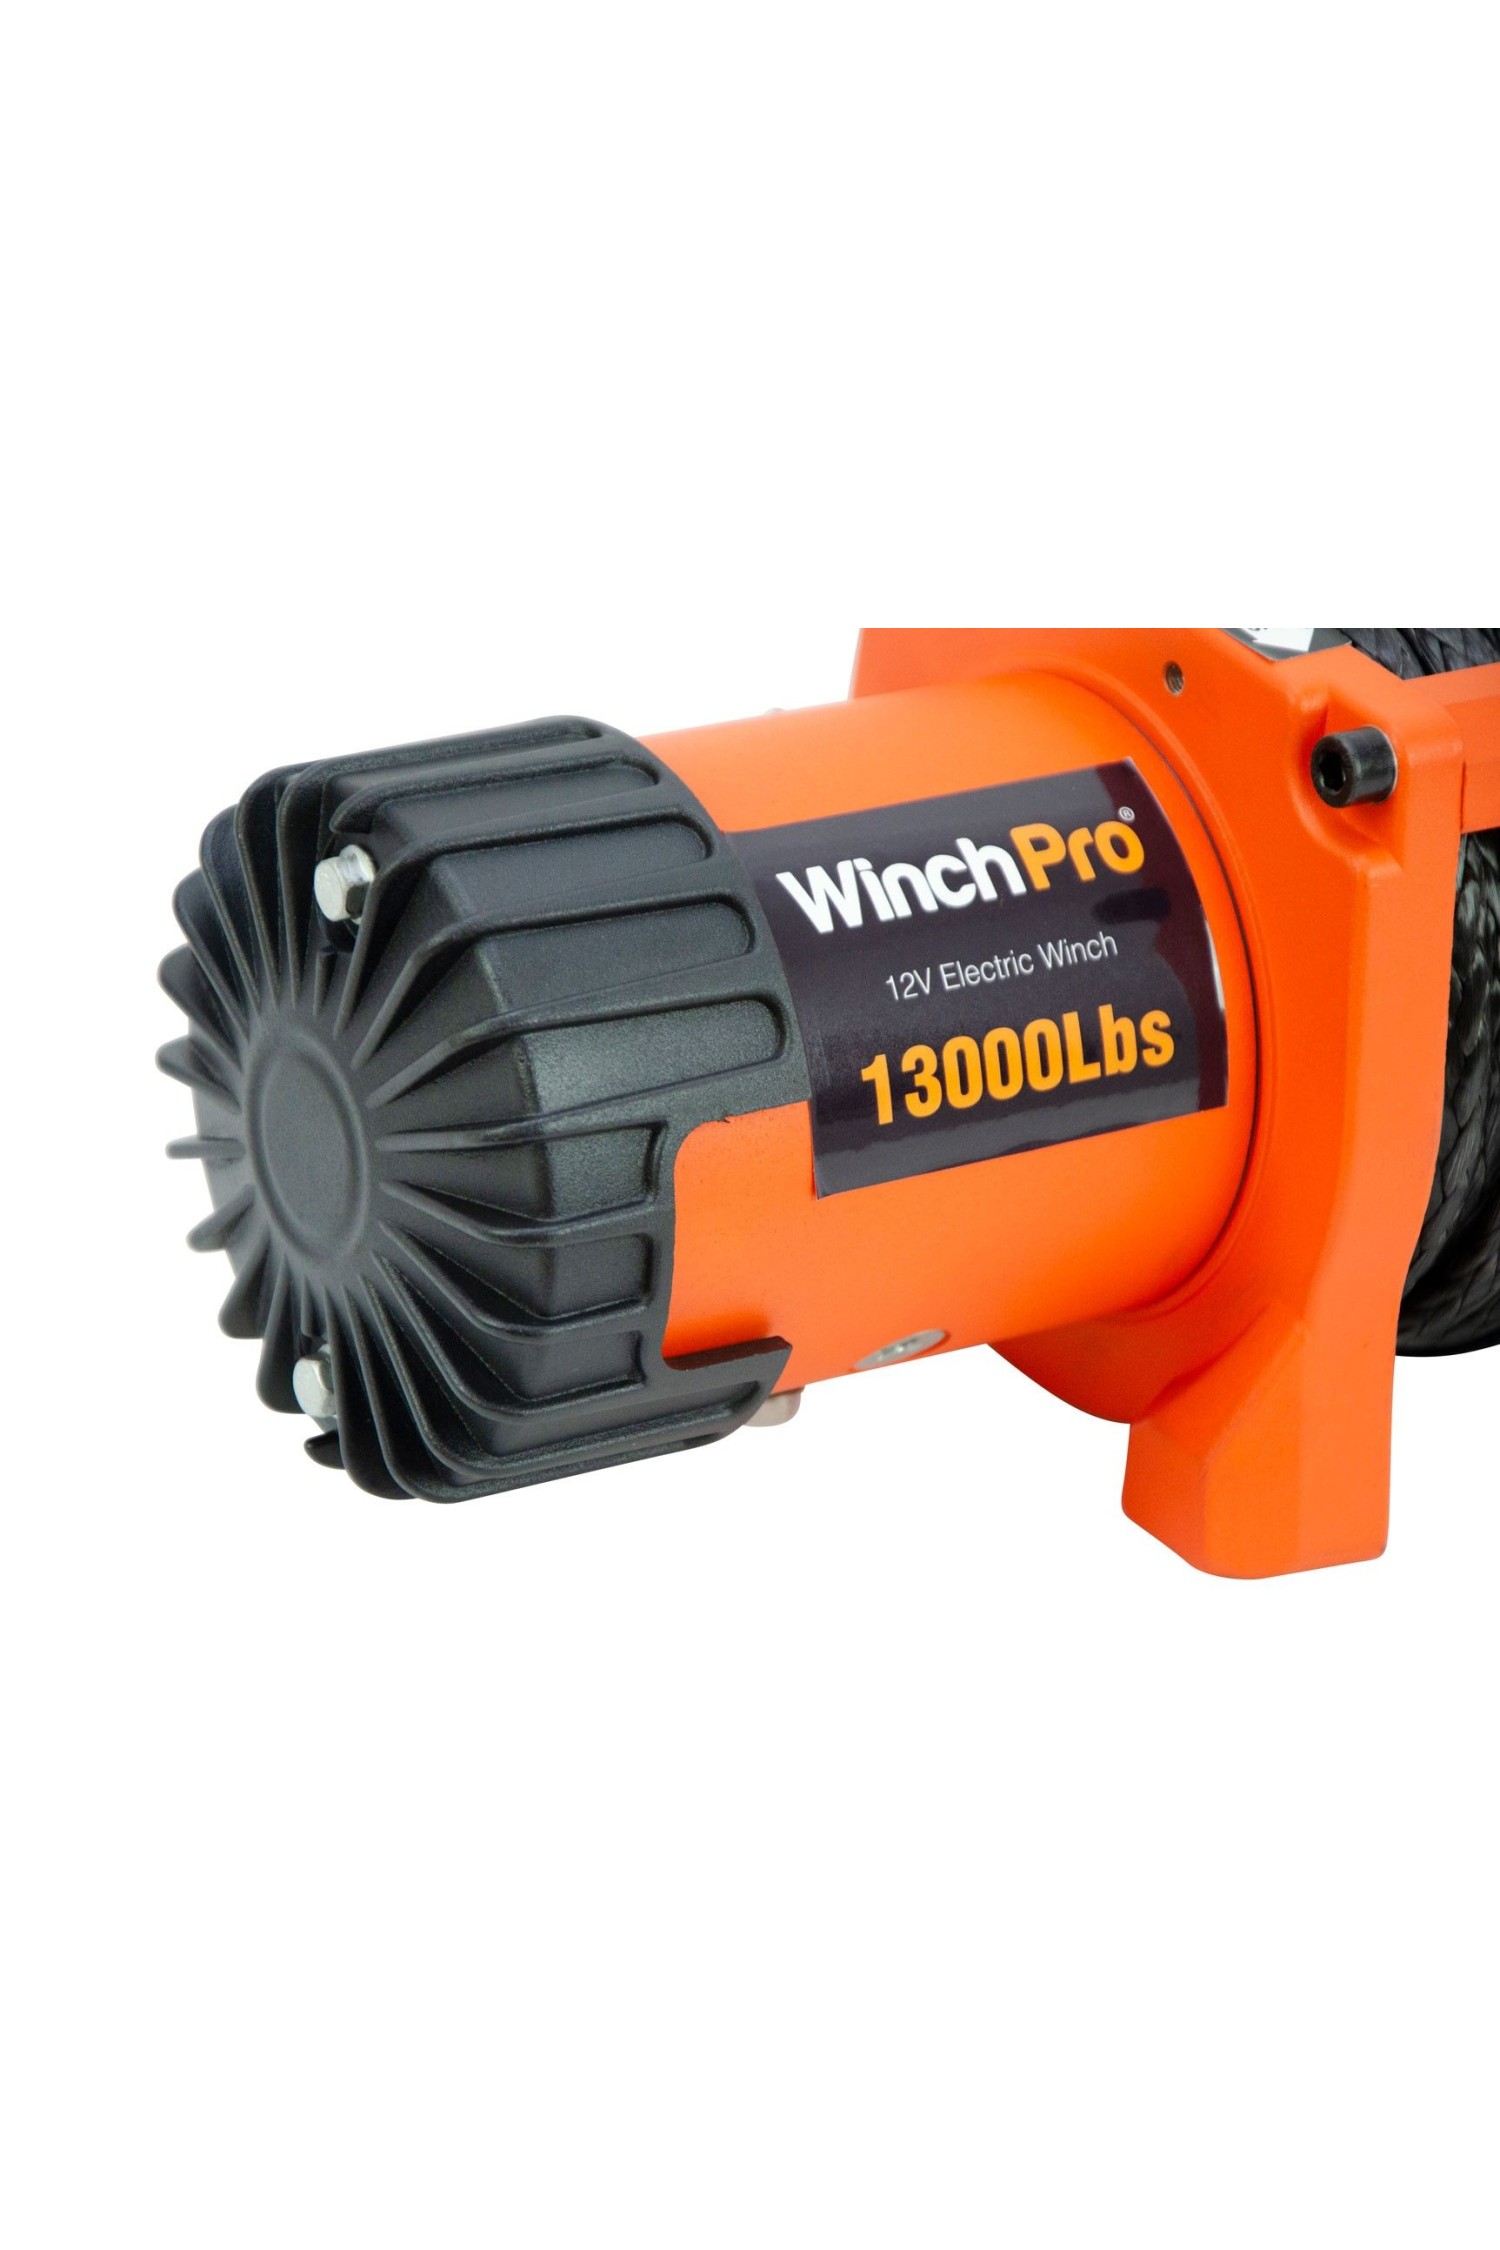 WinchPro - Cabrestante Eléctrico 12V 5900kg/13000lbs, 26m De